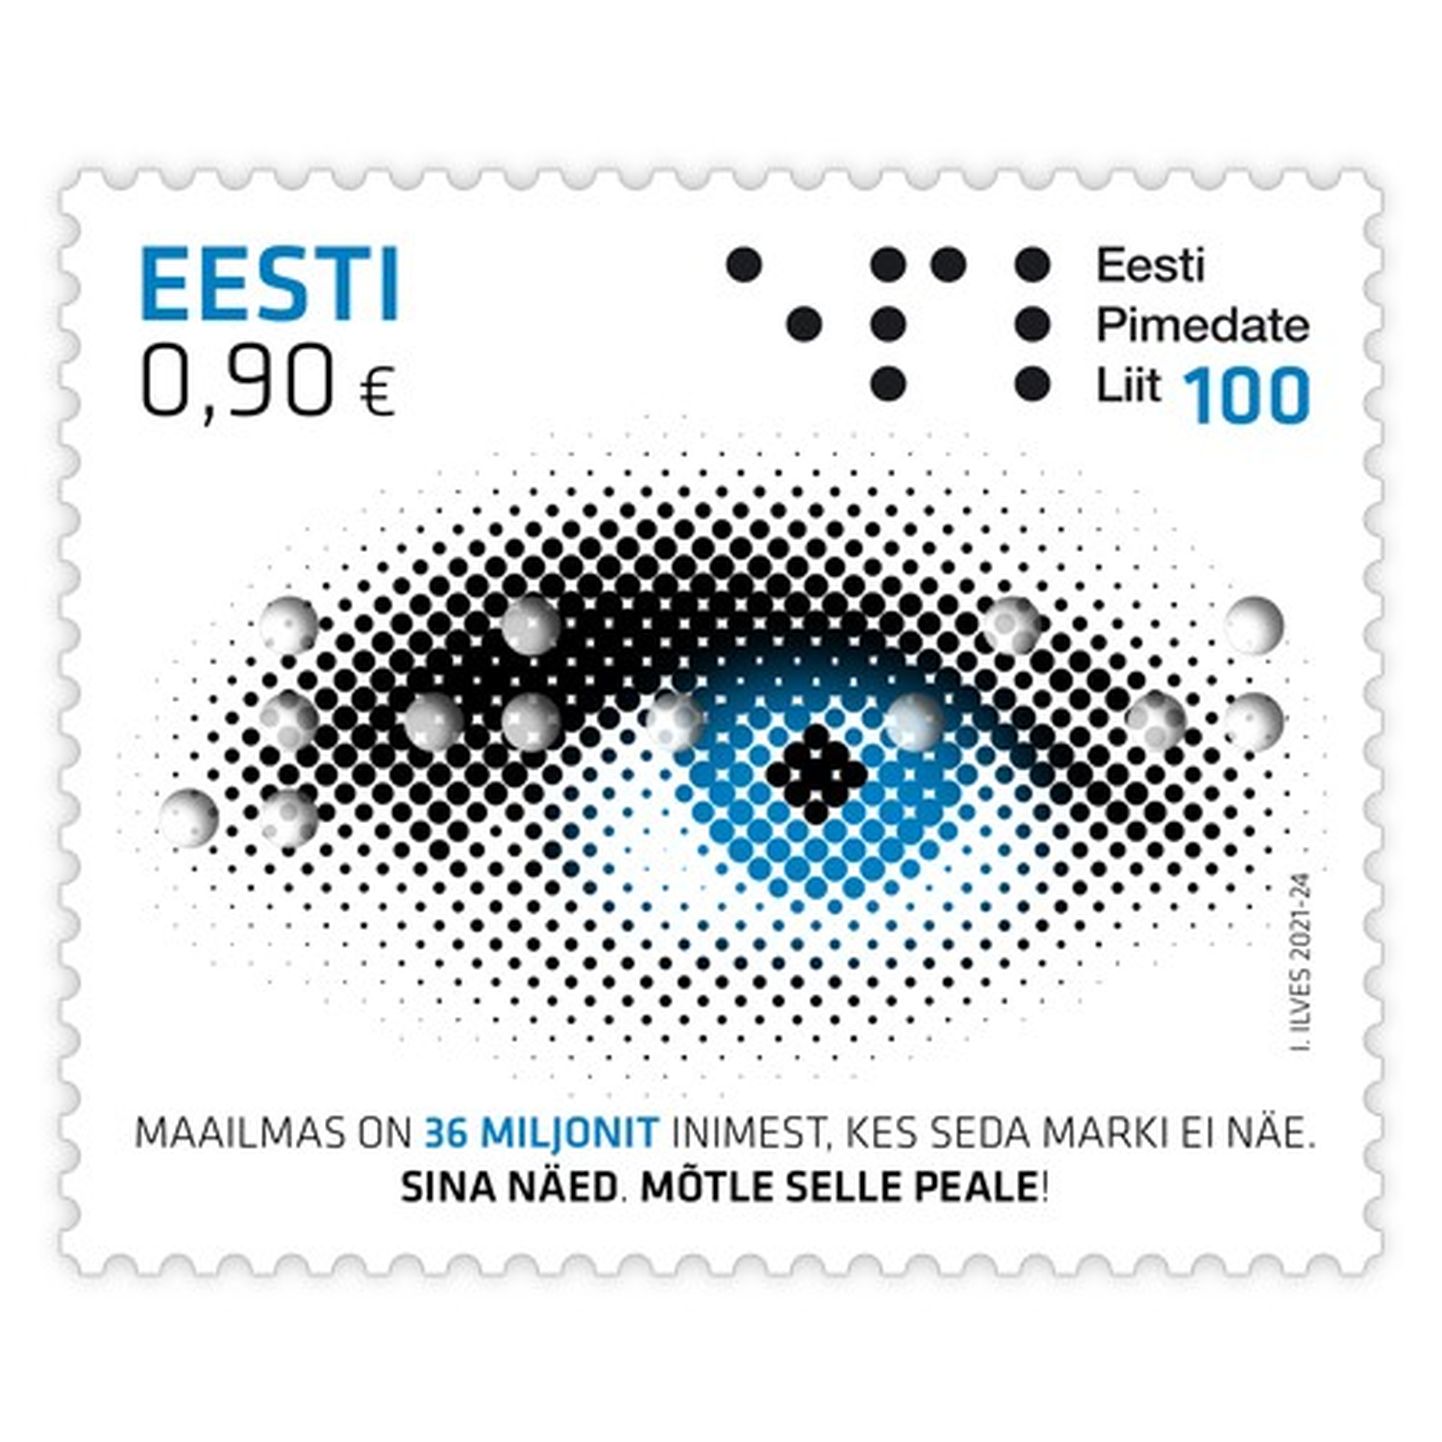 Eesti pimedate liidu 100. aastapäeva tähistab oktoobris käibele tulnud postmark.